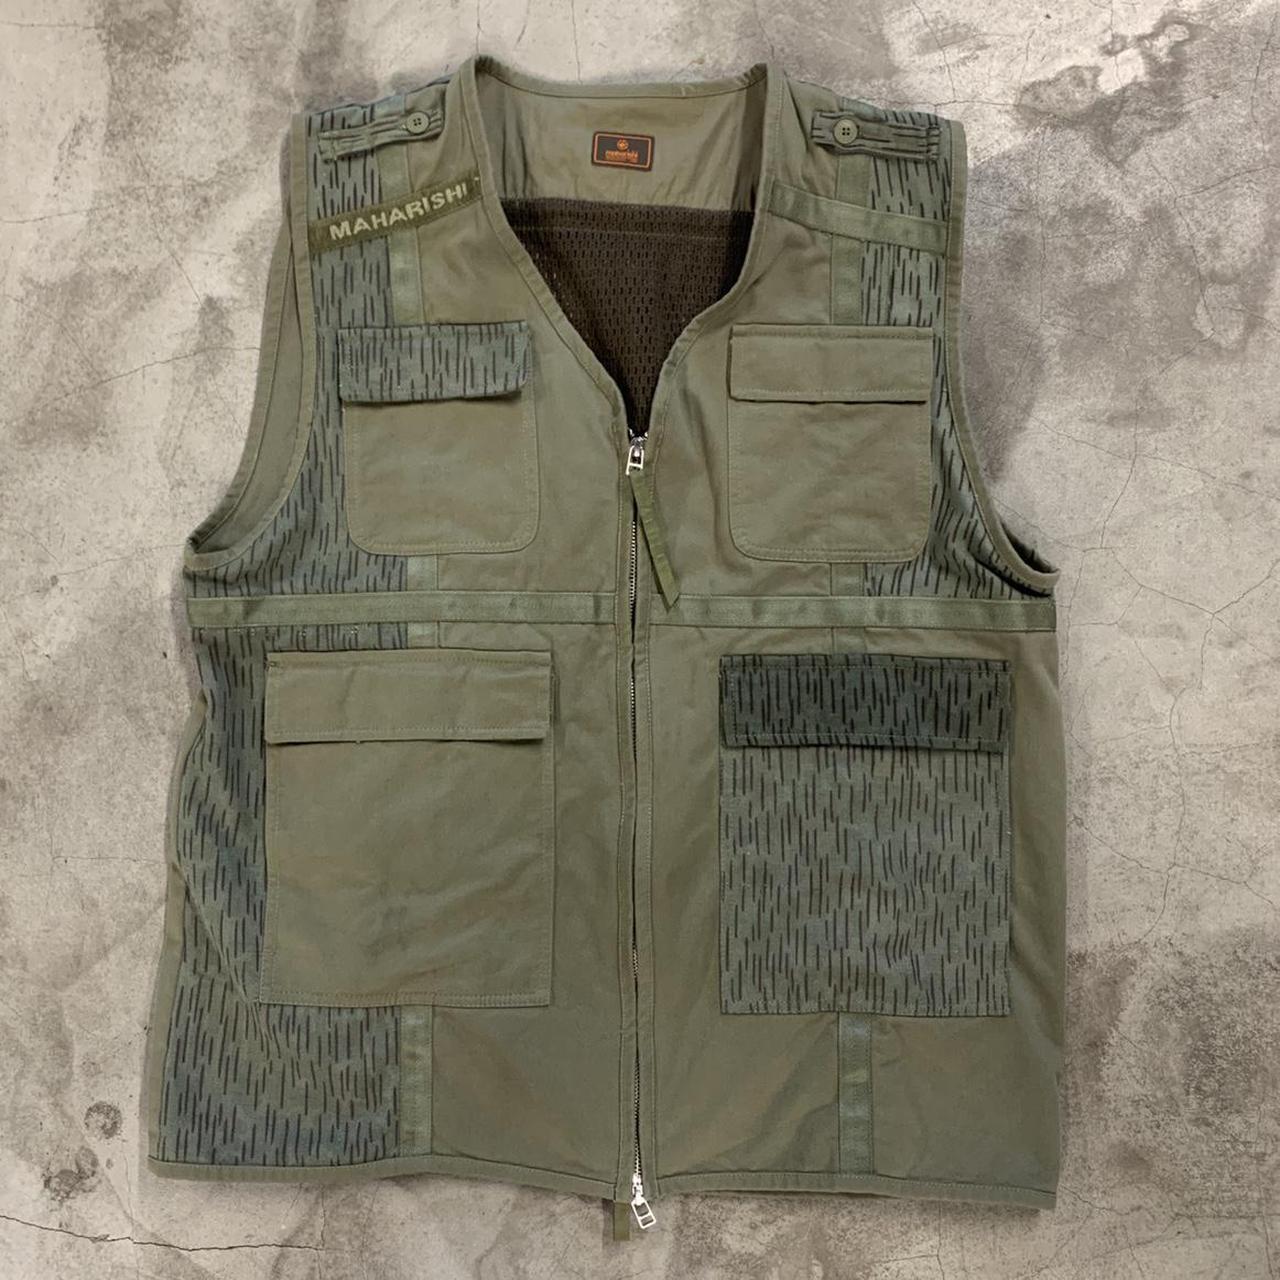 Product Image 1 - Maharishi upcycled vest. Great pockets